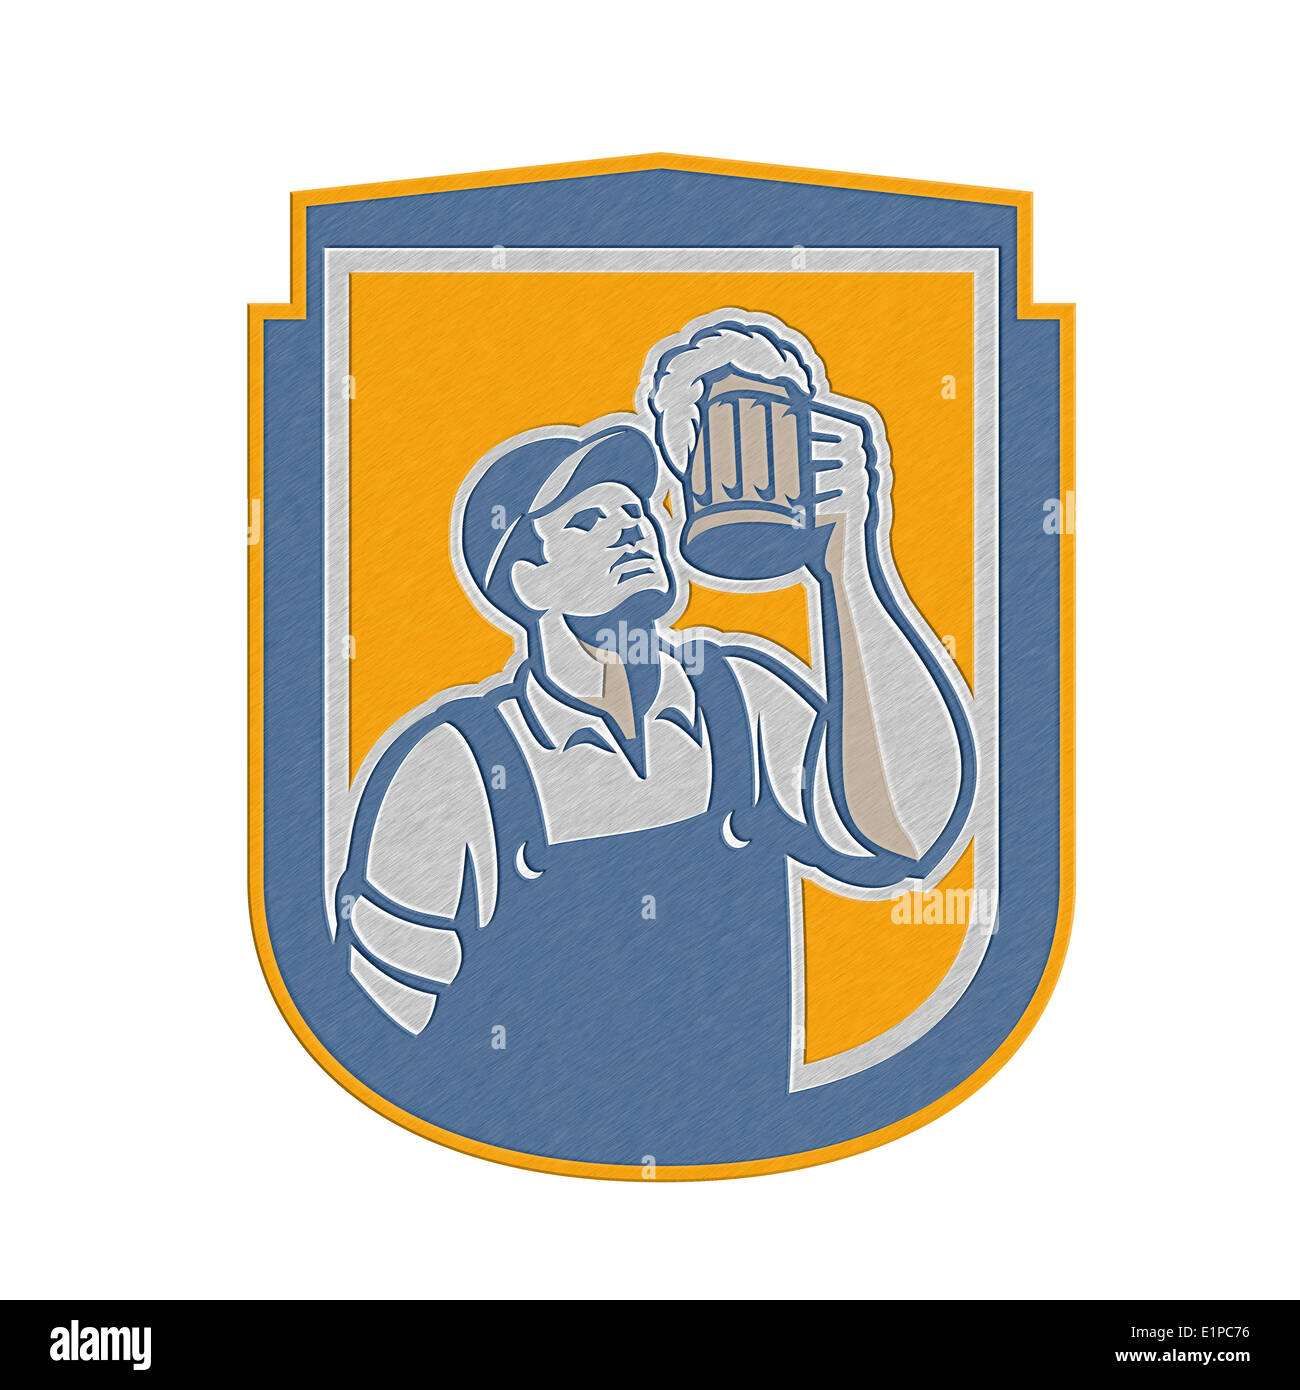 Metallische gestylt Abbildung eines Barkeeper Arbeitnehmers Toasten Becher Bier Ale heute eingerichtet im inneren Kreis auf isolierten weißen backgr Stockfoto